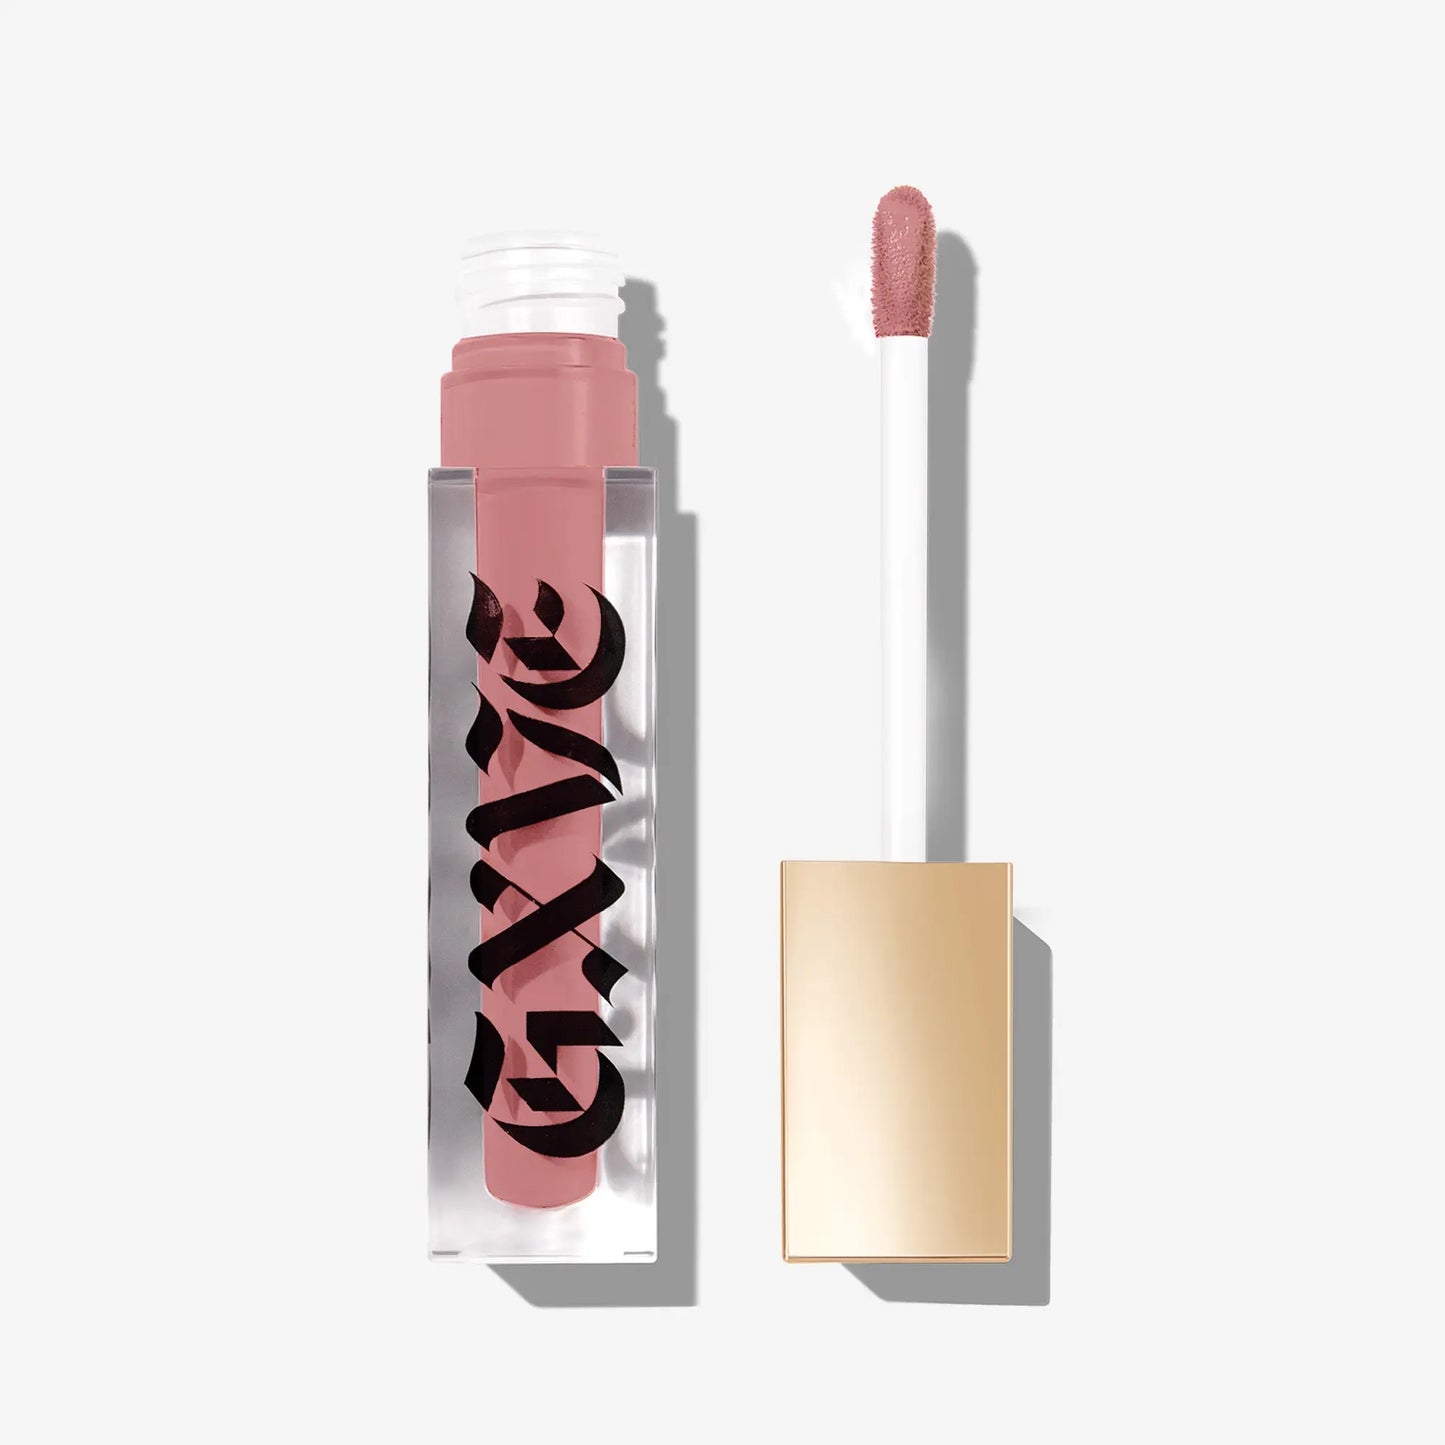 GXVE Tomboy - High-Performance Matte Liquid Lipstick